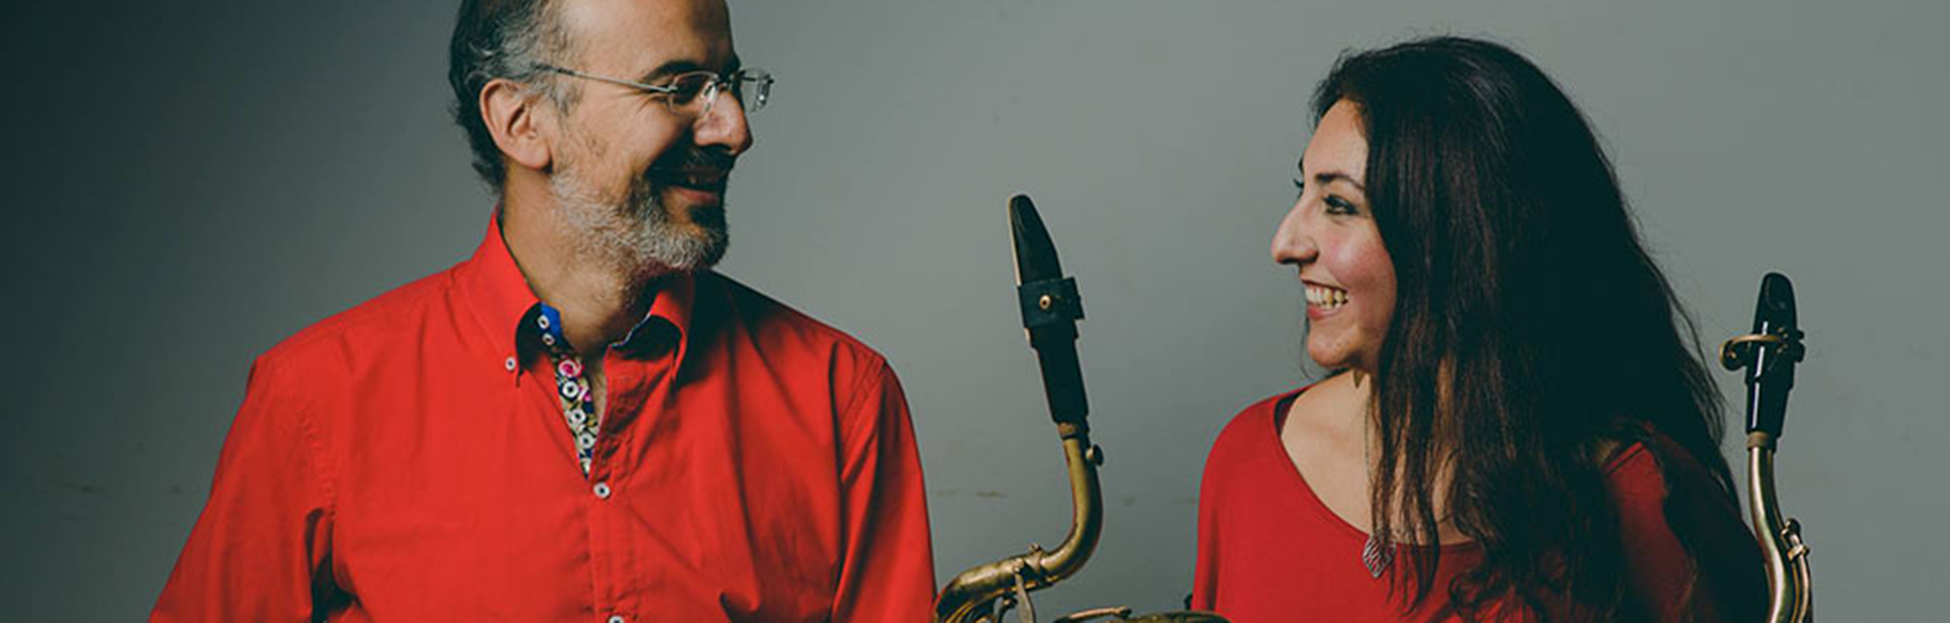 Clase magistral de Saxofón, a cargo de Alejandro Rivas Pinto y Karem Ruiz